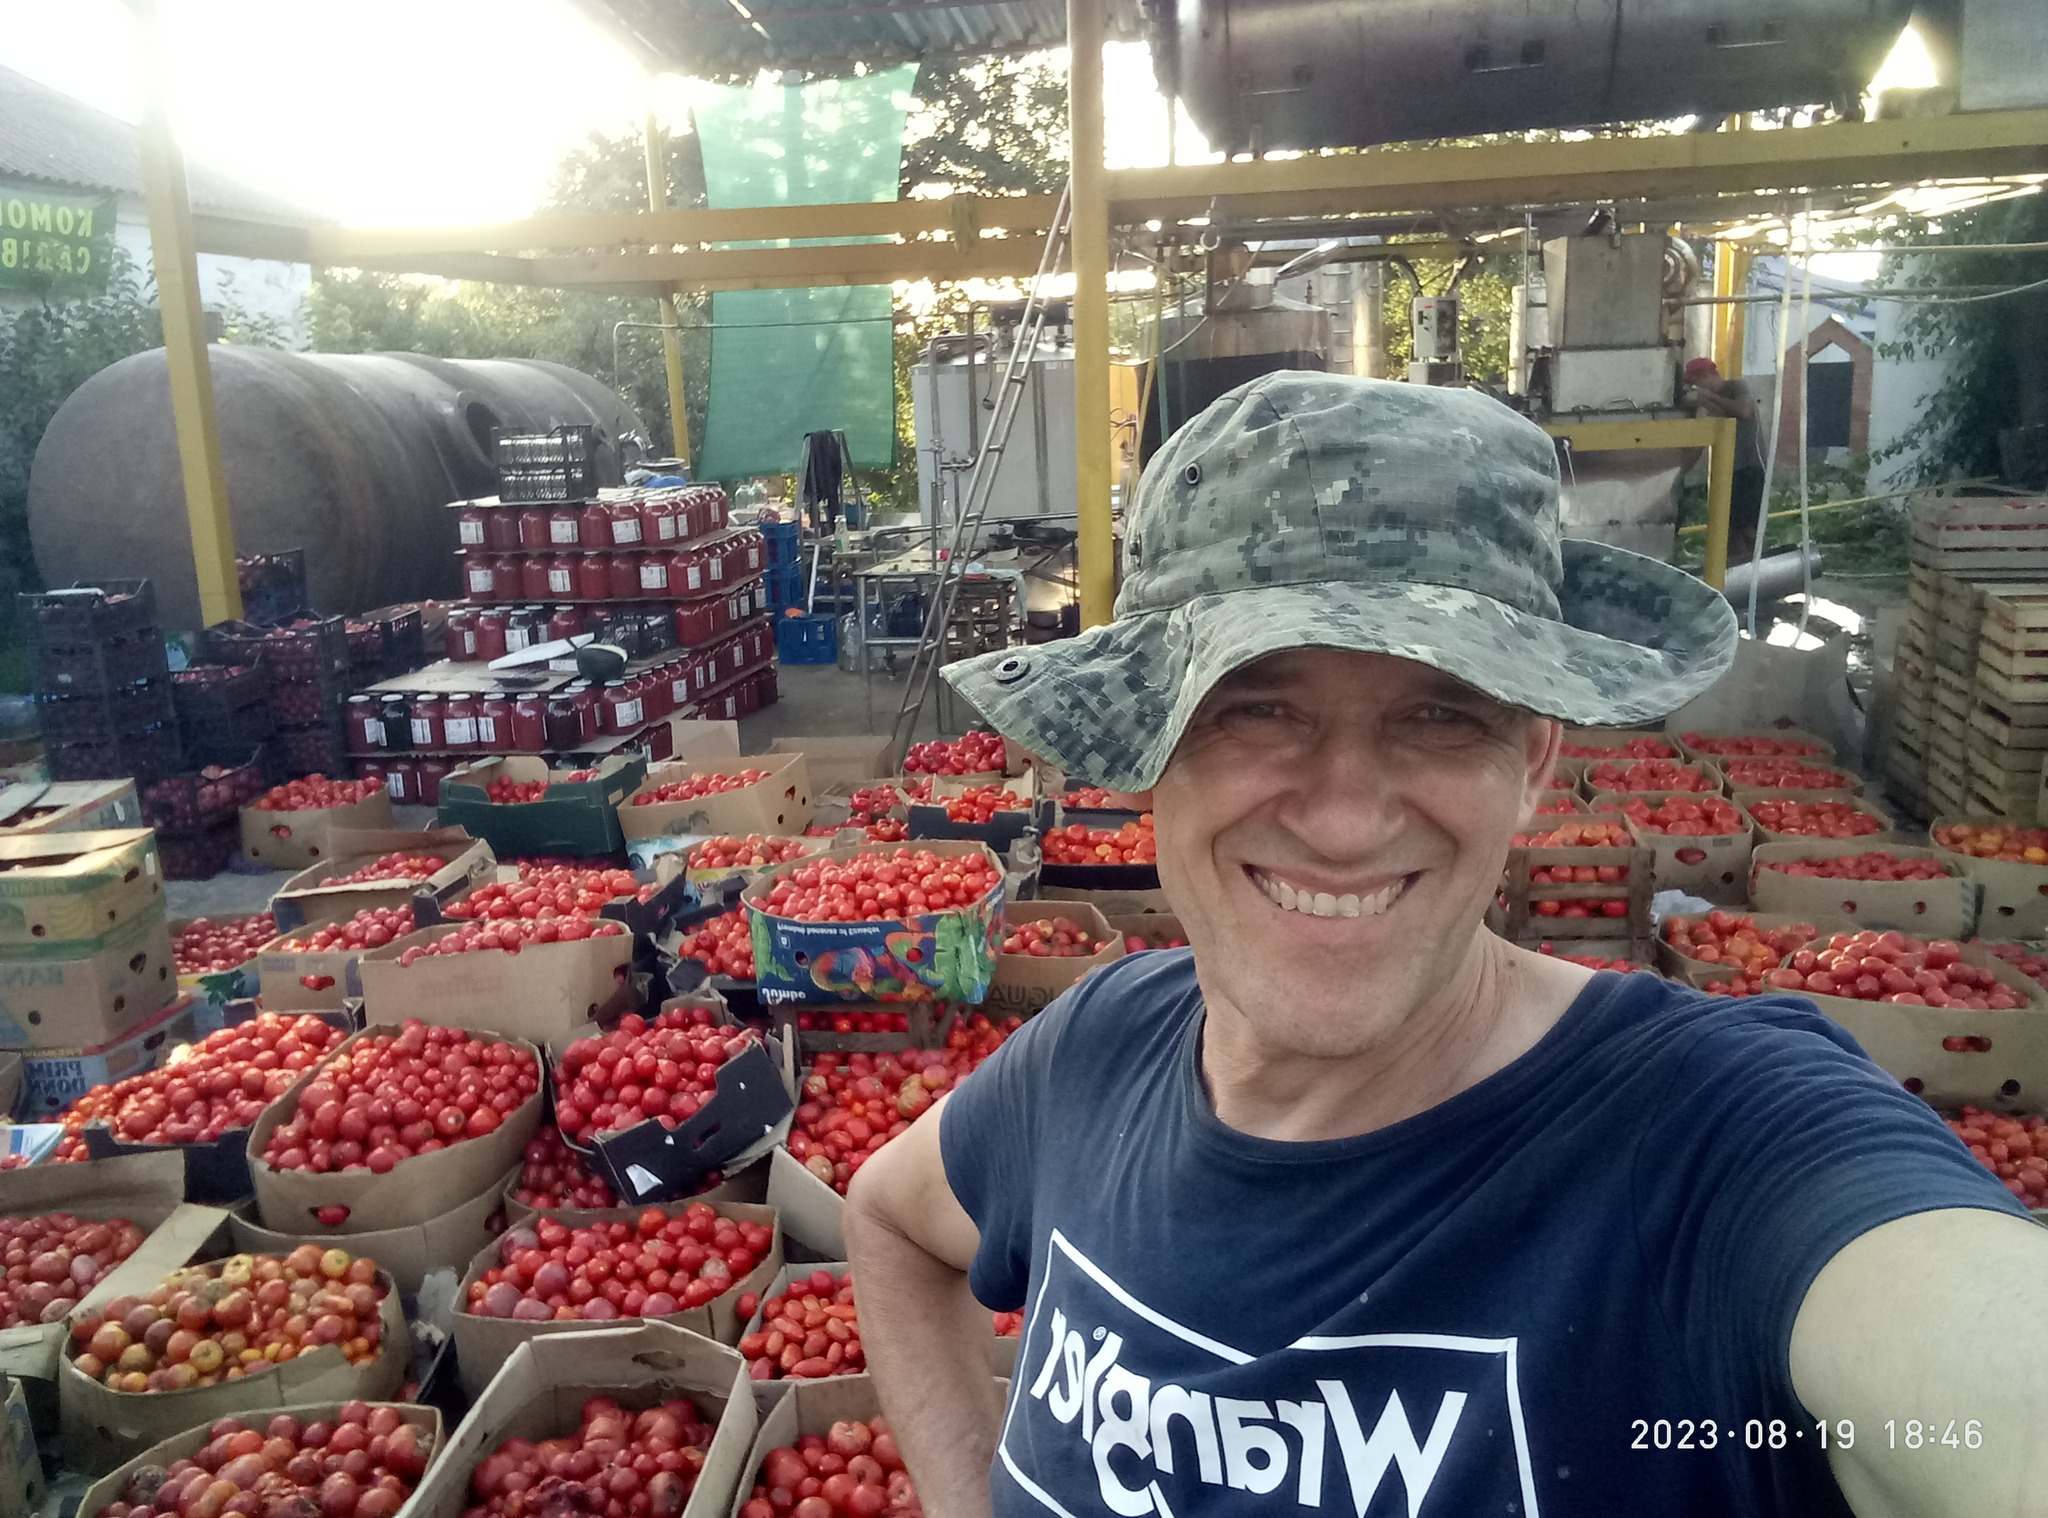 Полюбляють діти сік томатний пити: садове товариство  з Полтавщини переробляє щедрий урожай